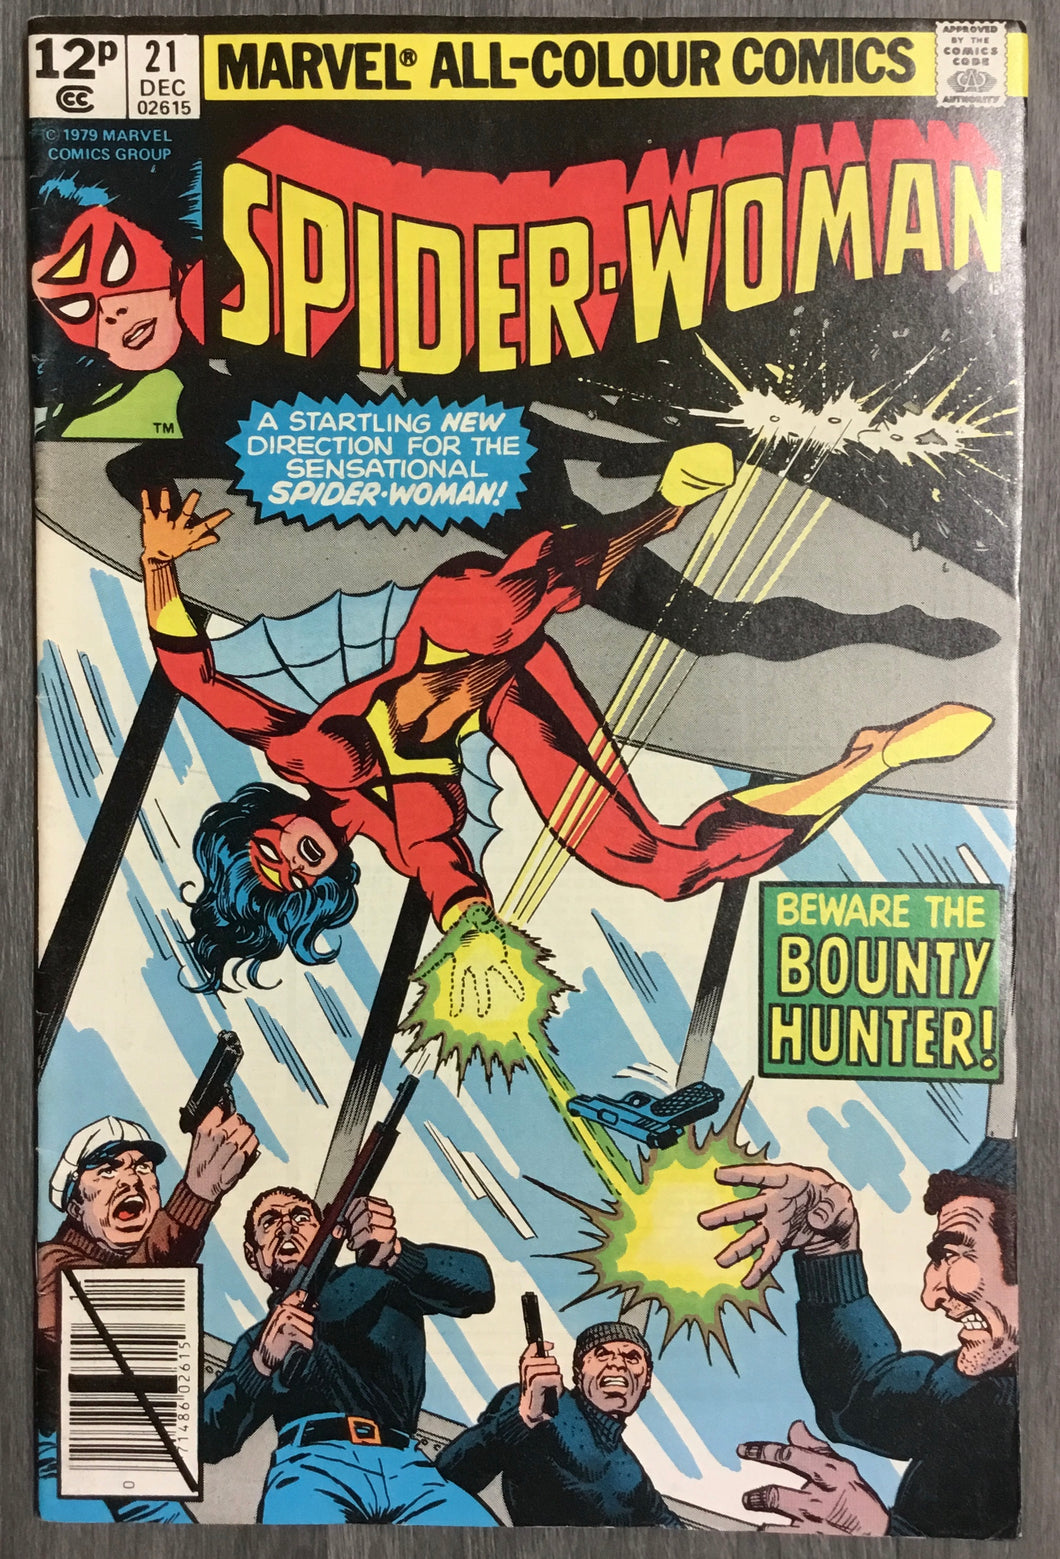 Spider-Woman No. #21 1979 Marvel Comics